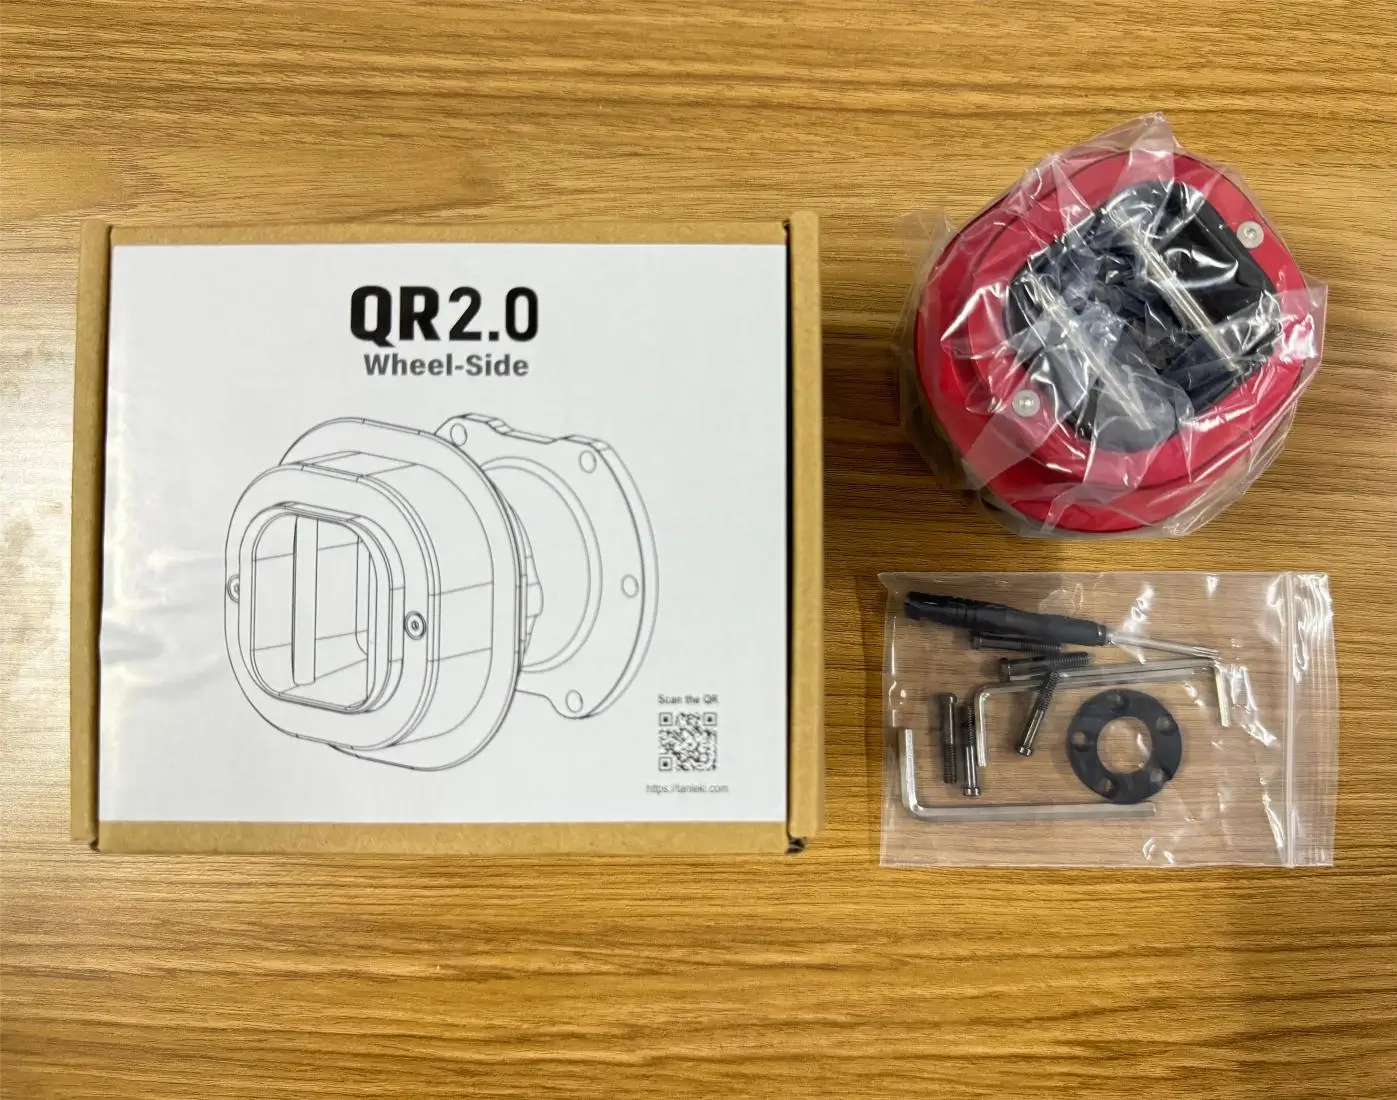 Newest QR2 Lejtő wheel-sides Képes számára fanatec Kormánymű Kerék kiegészítők qr2 -ért Kerék Áramszedő Vörös biliárdgolyó Kék szín Stb. Megszerezhető